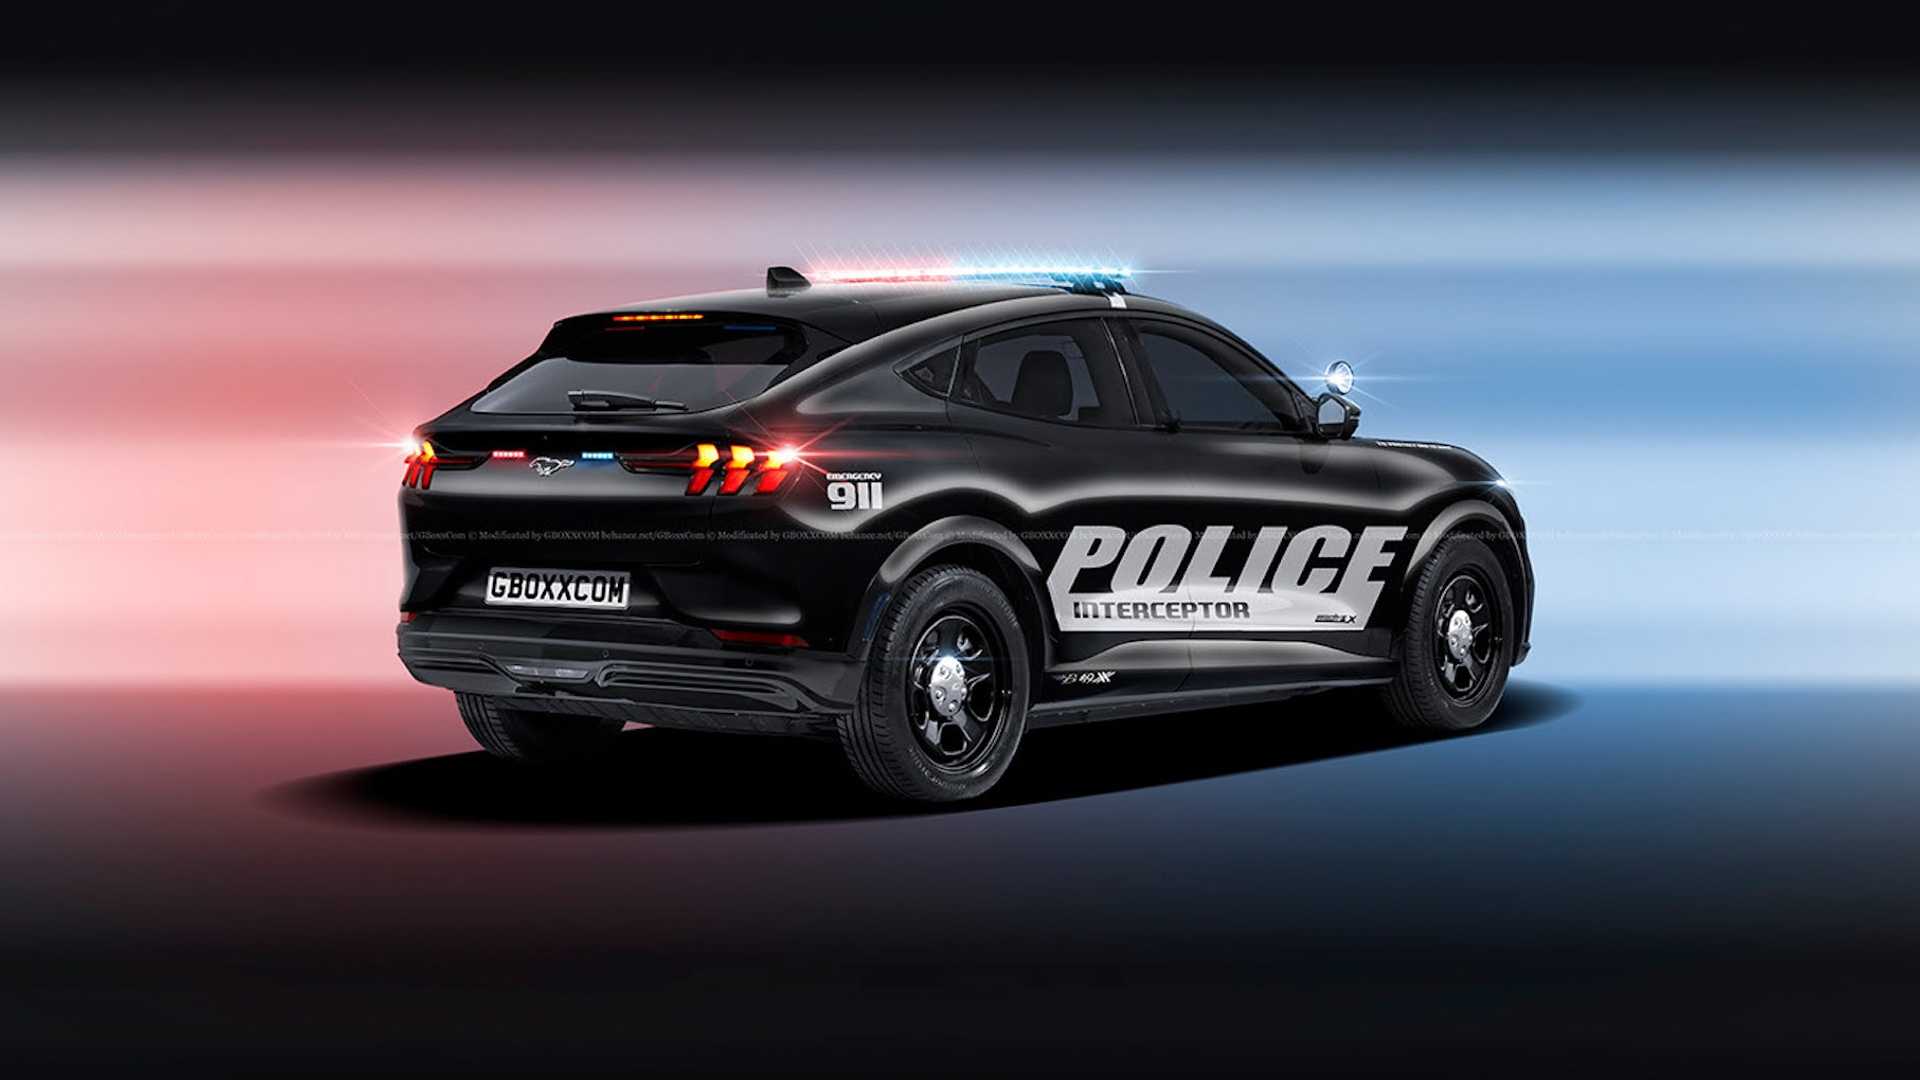 خودروی الکتریکی موستانگ به پلیس پیوست